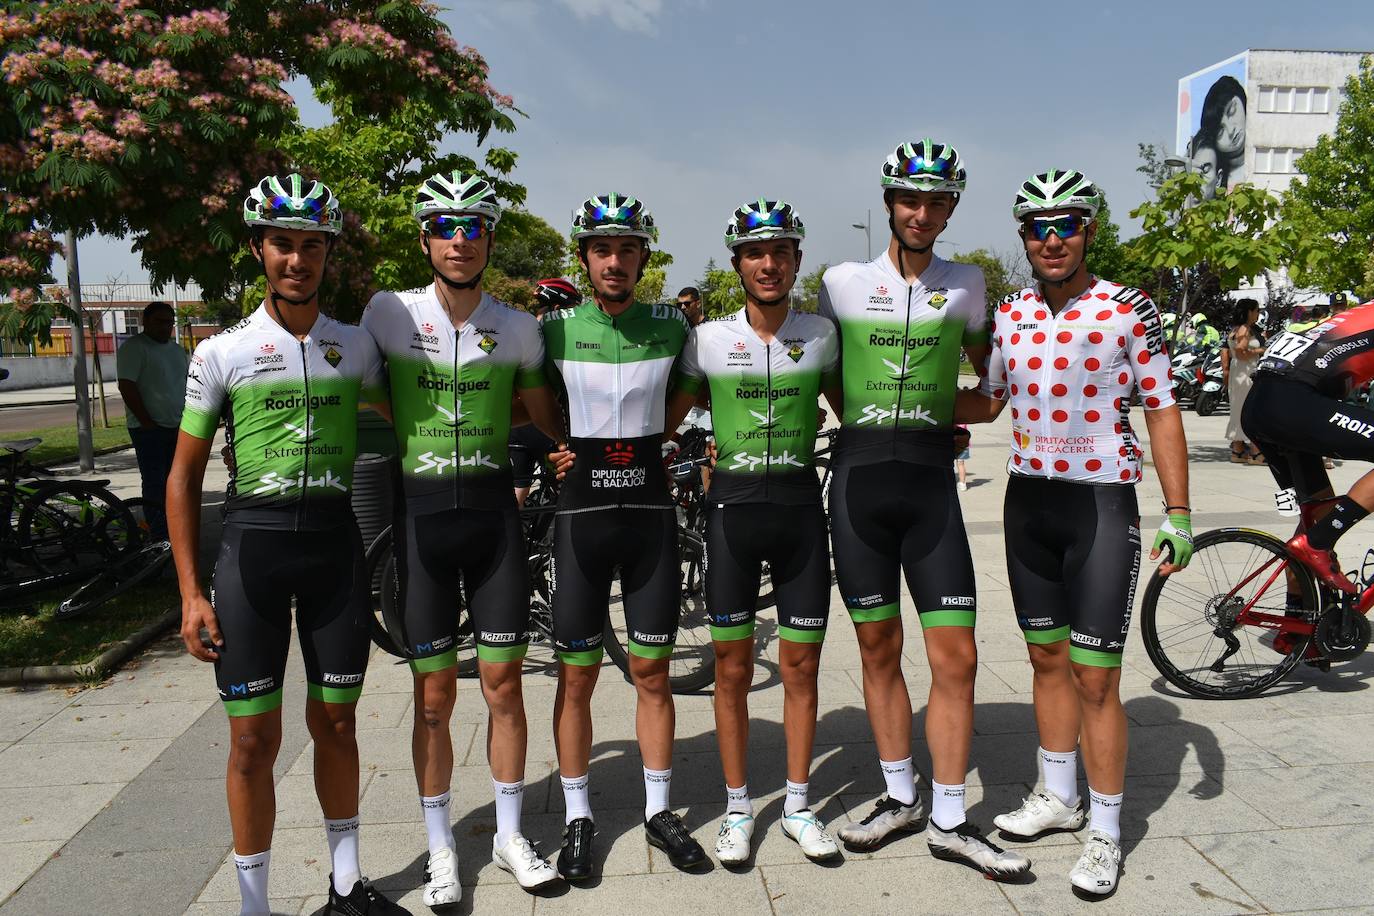 Miajadas se convirtió el pasado sábado en uno de los puntos clave de la Vuelta Ciclista Extremadura 2022 siendo el punto de salida oficial de la cuarta etapa. Miajadeños y visitantes se acercaron hasta la avenida García Siñeriz para conocer de cerca la 'serpiente multicolor', a los ciclistas y equipos llegados desde distintos puntos del país. 